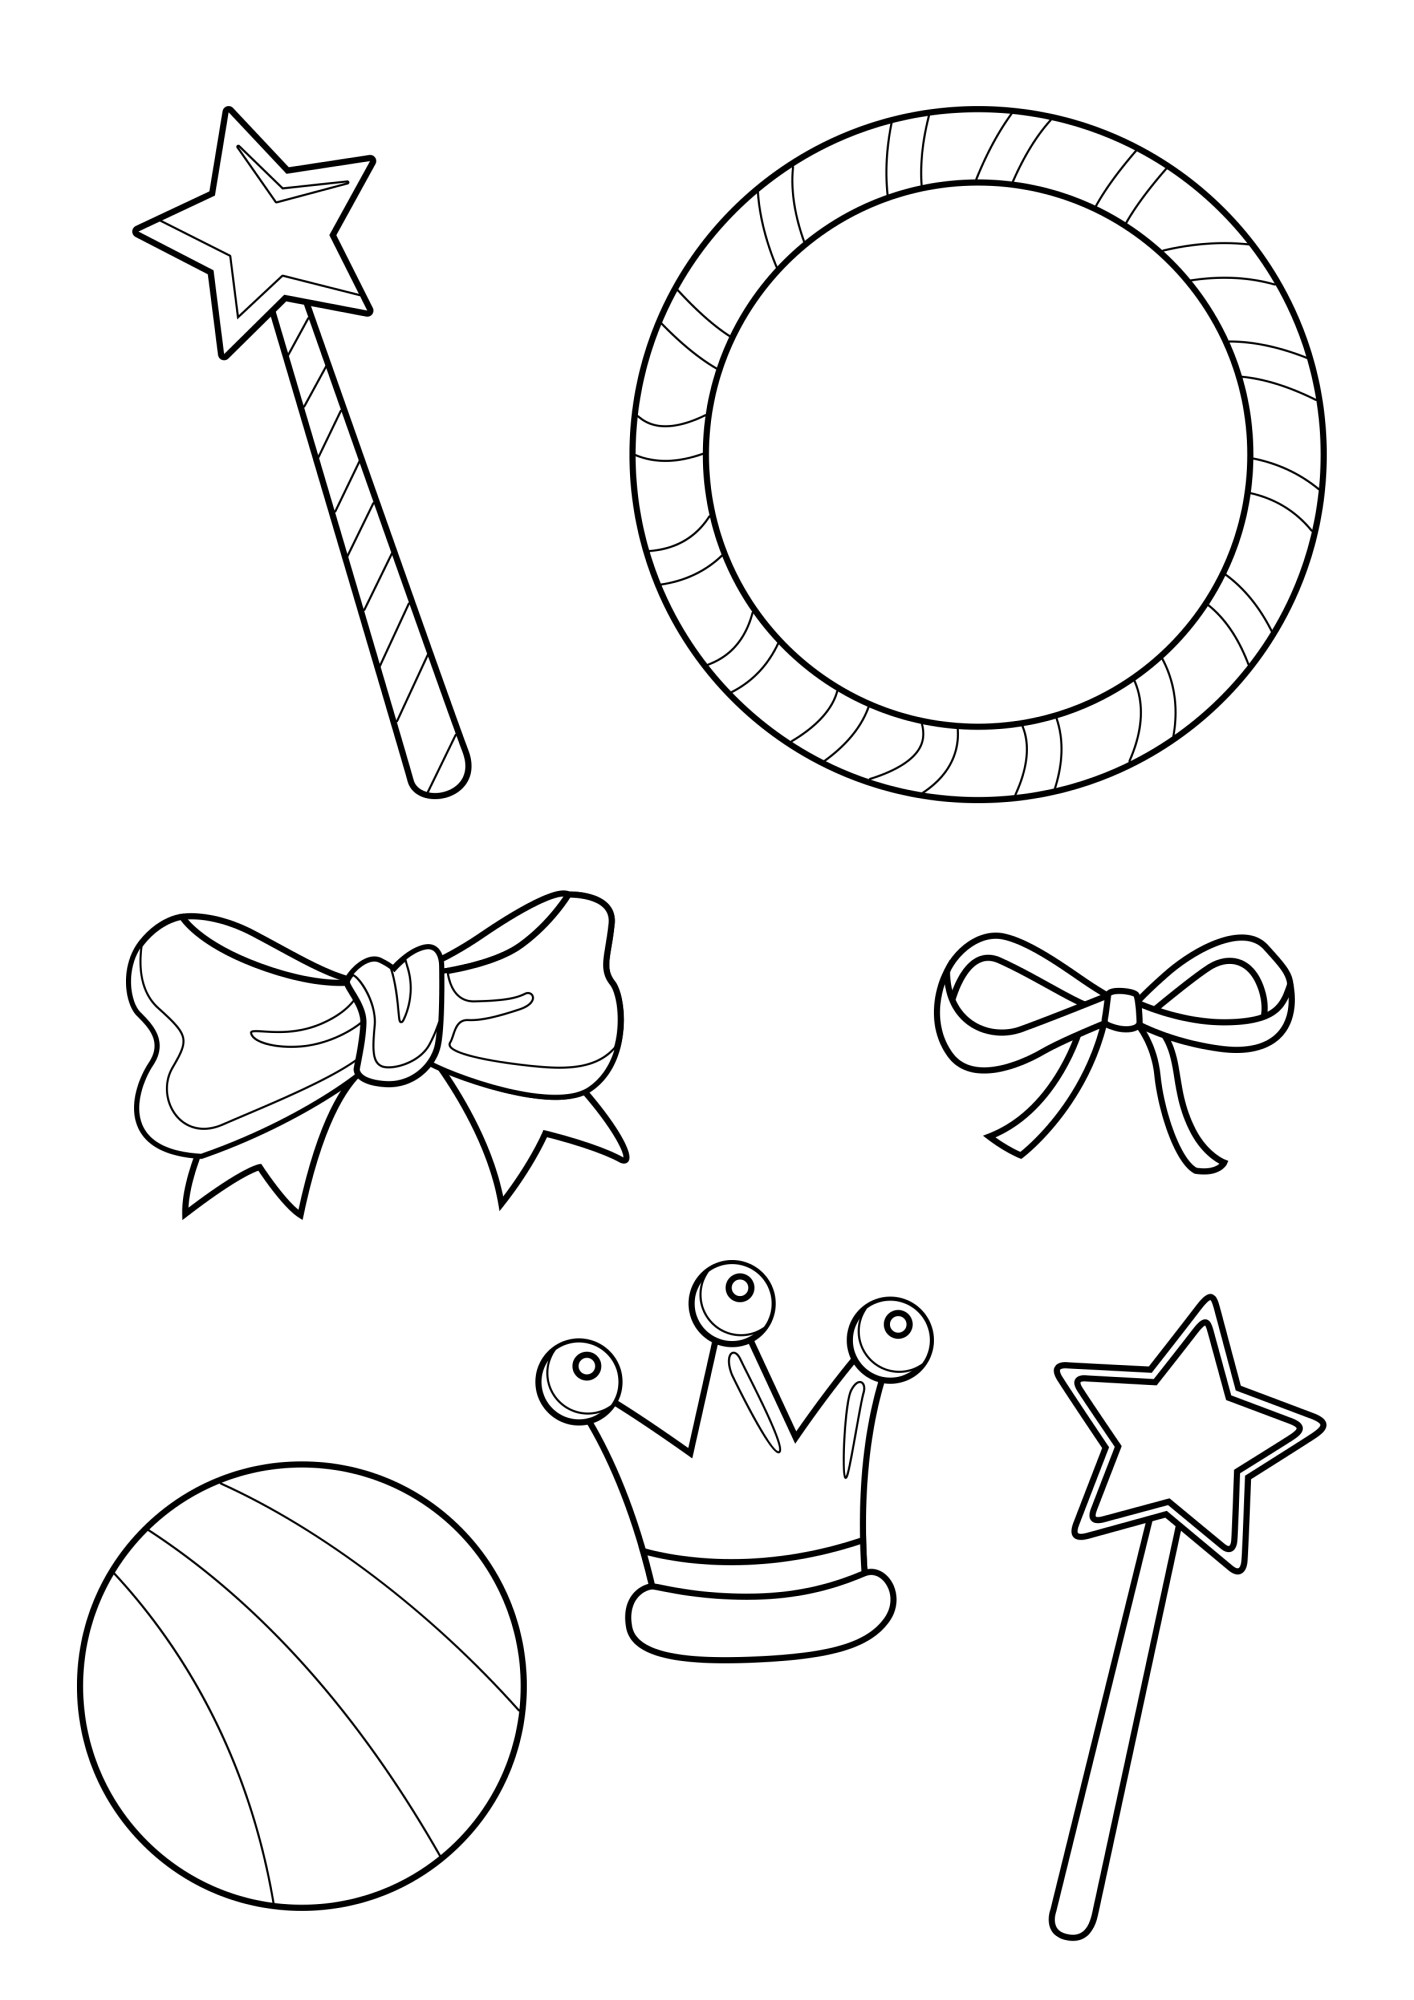 Раскраска для детей: игрушки: волшебные палочки, мячик, игрушечная корона и бантики